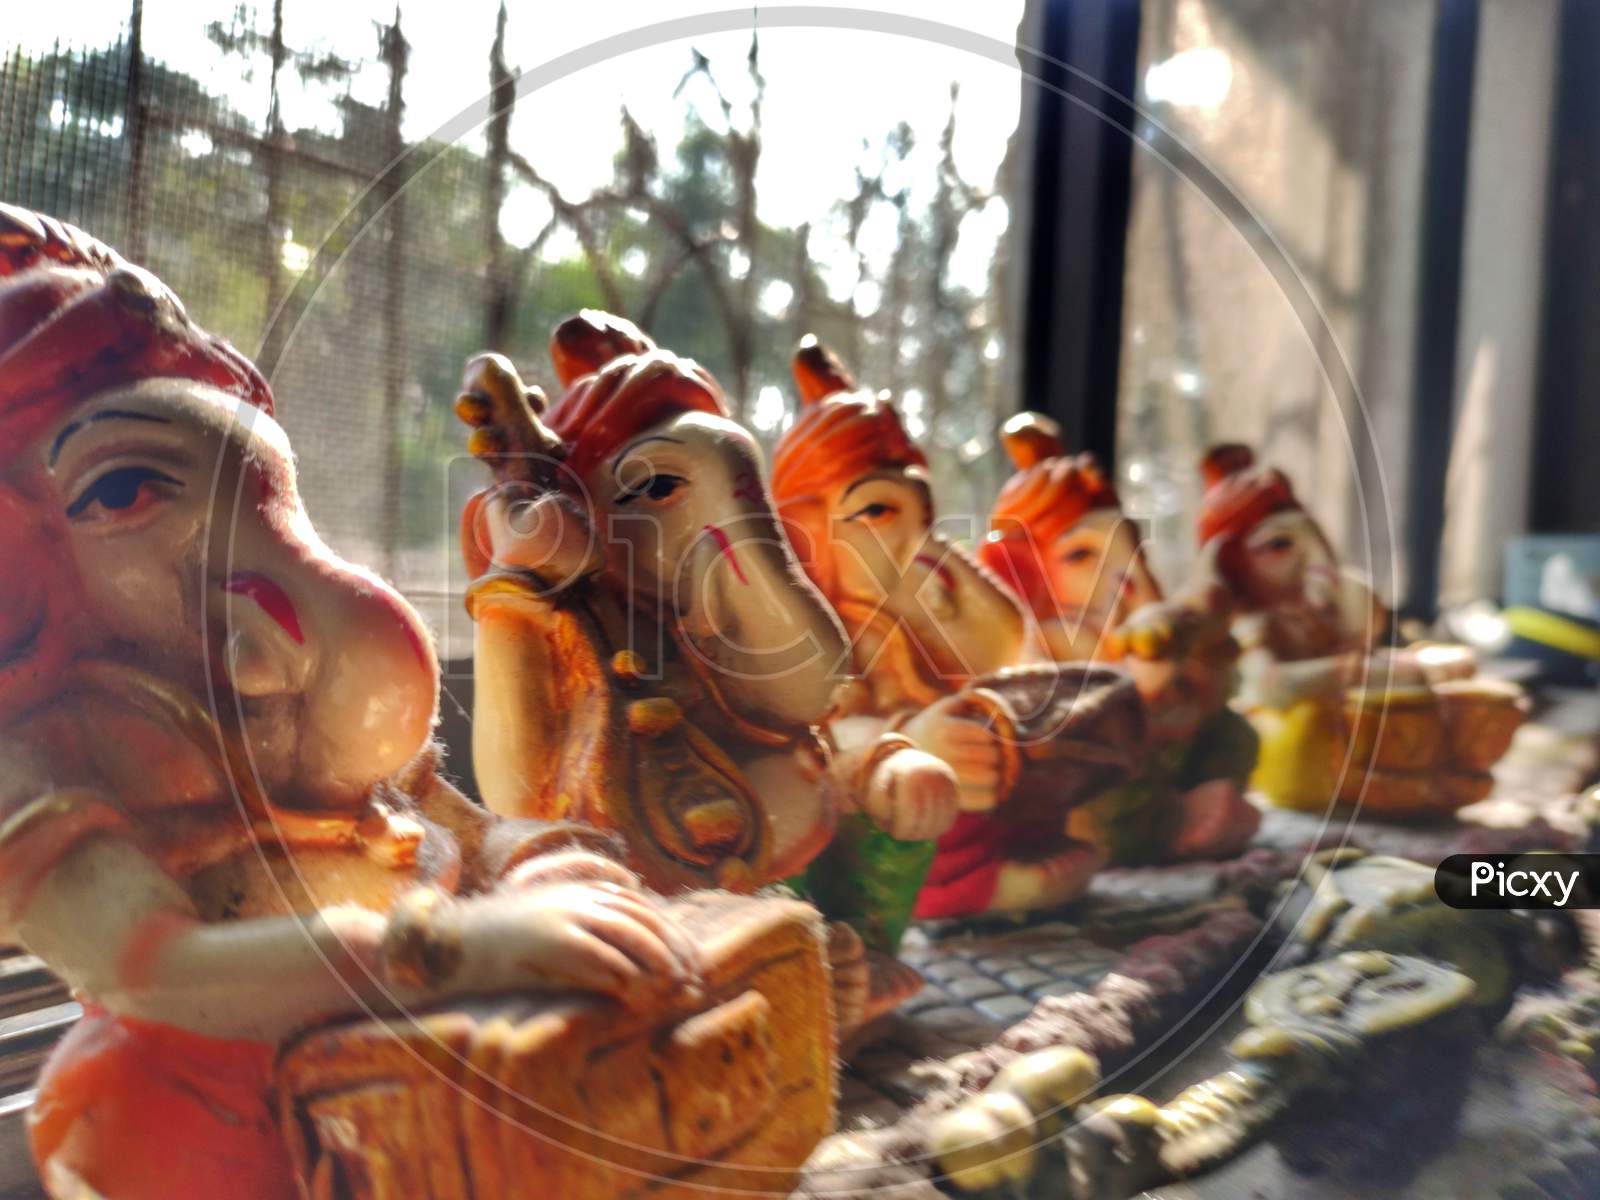 Ganpati bappa morya, Ganesh idol